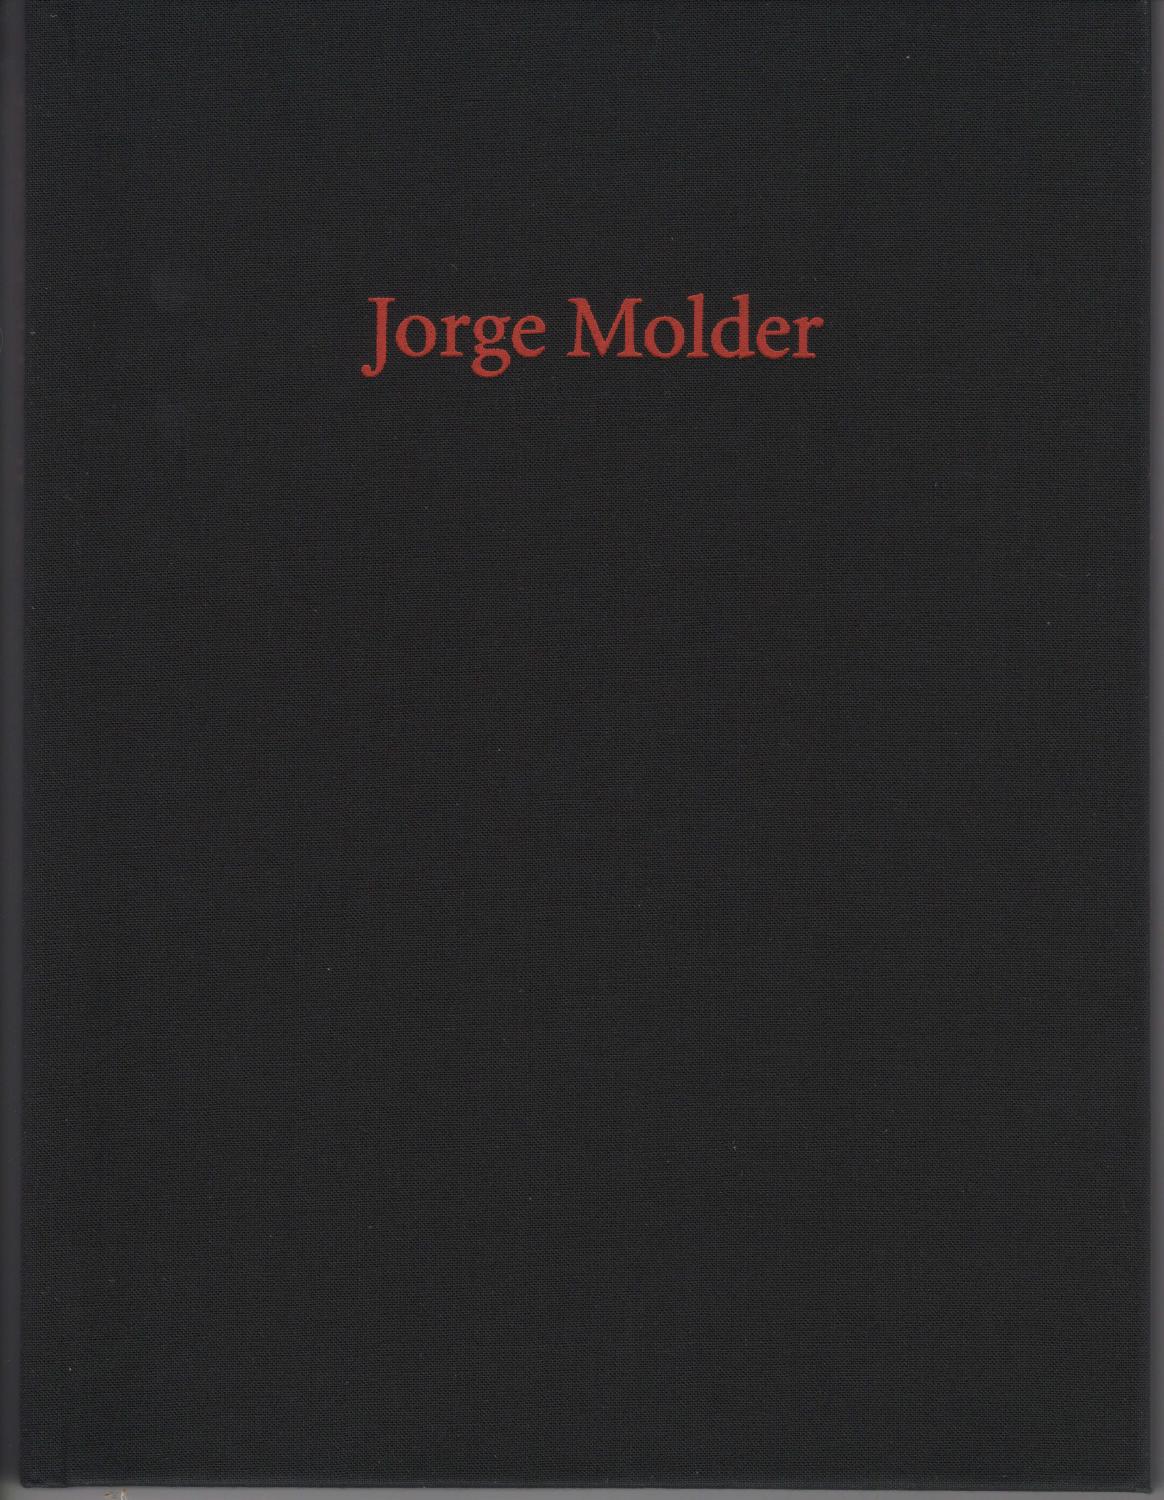 Nox by Jorge Molder - Jorge Molder